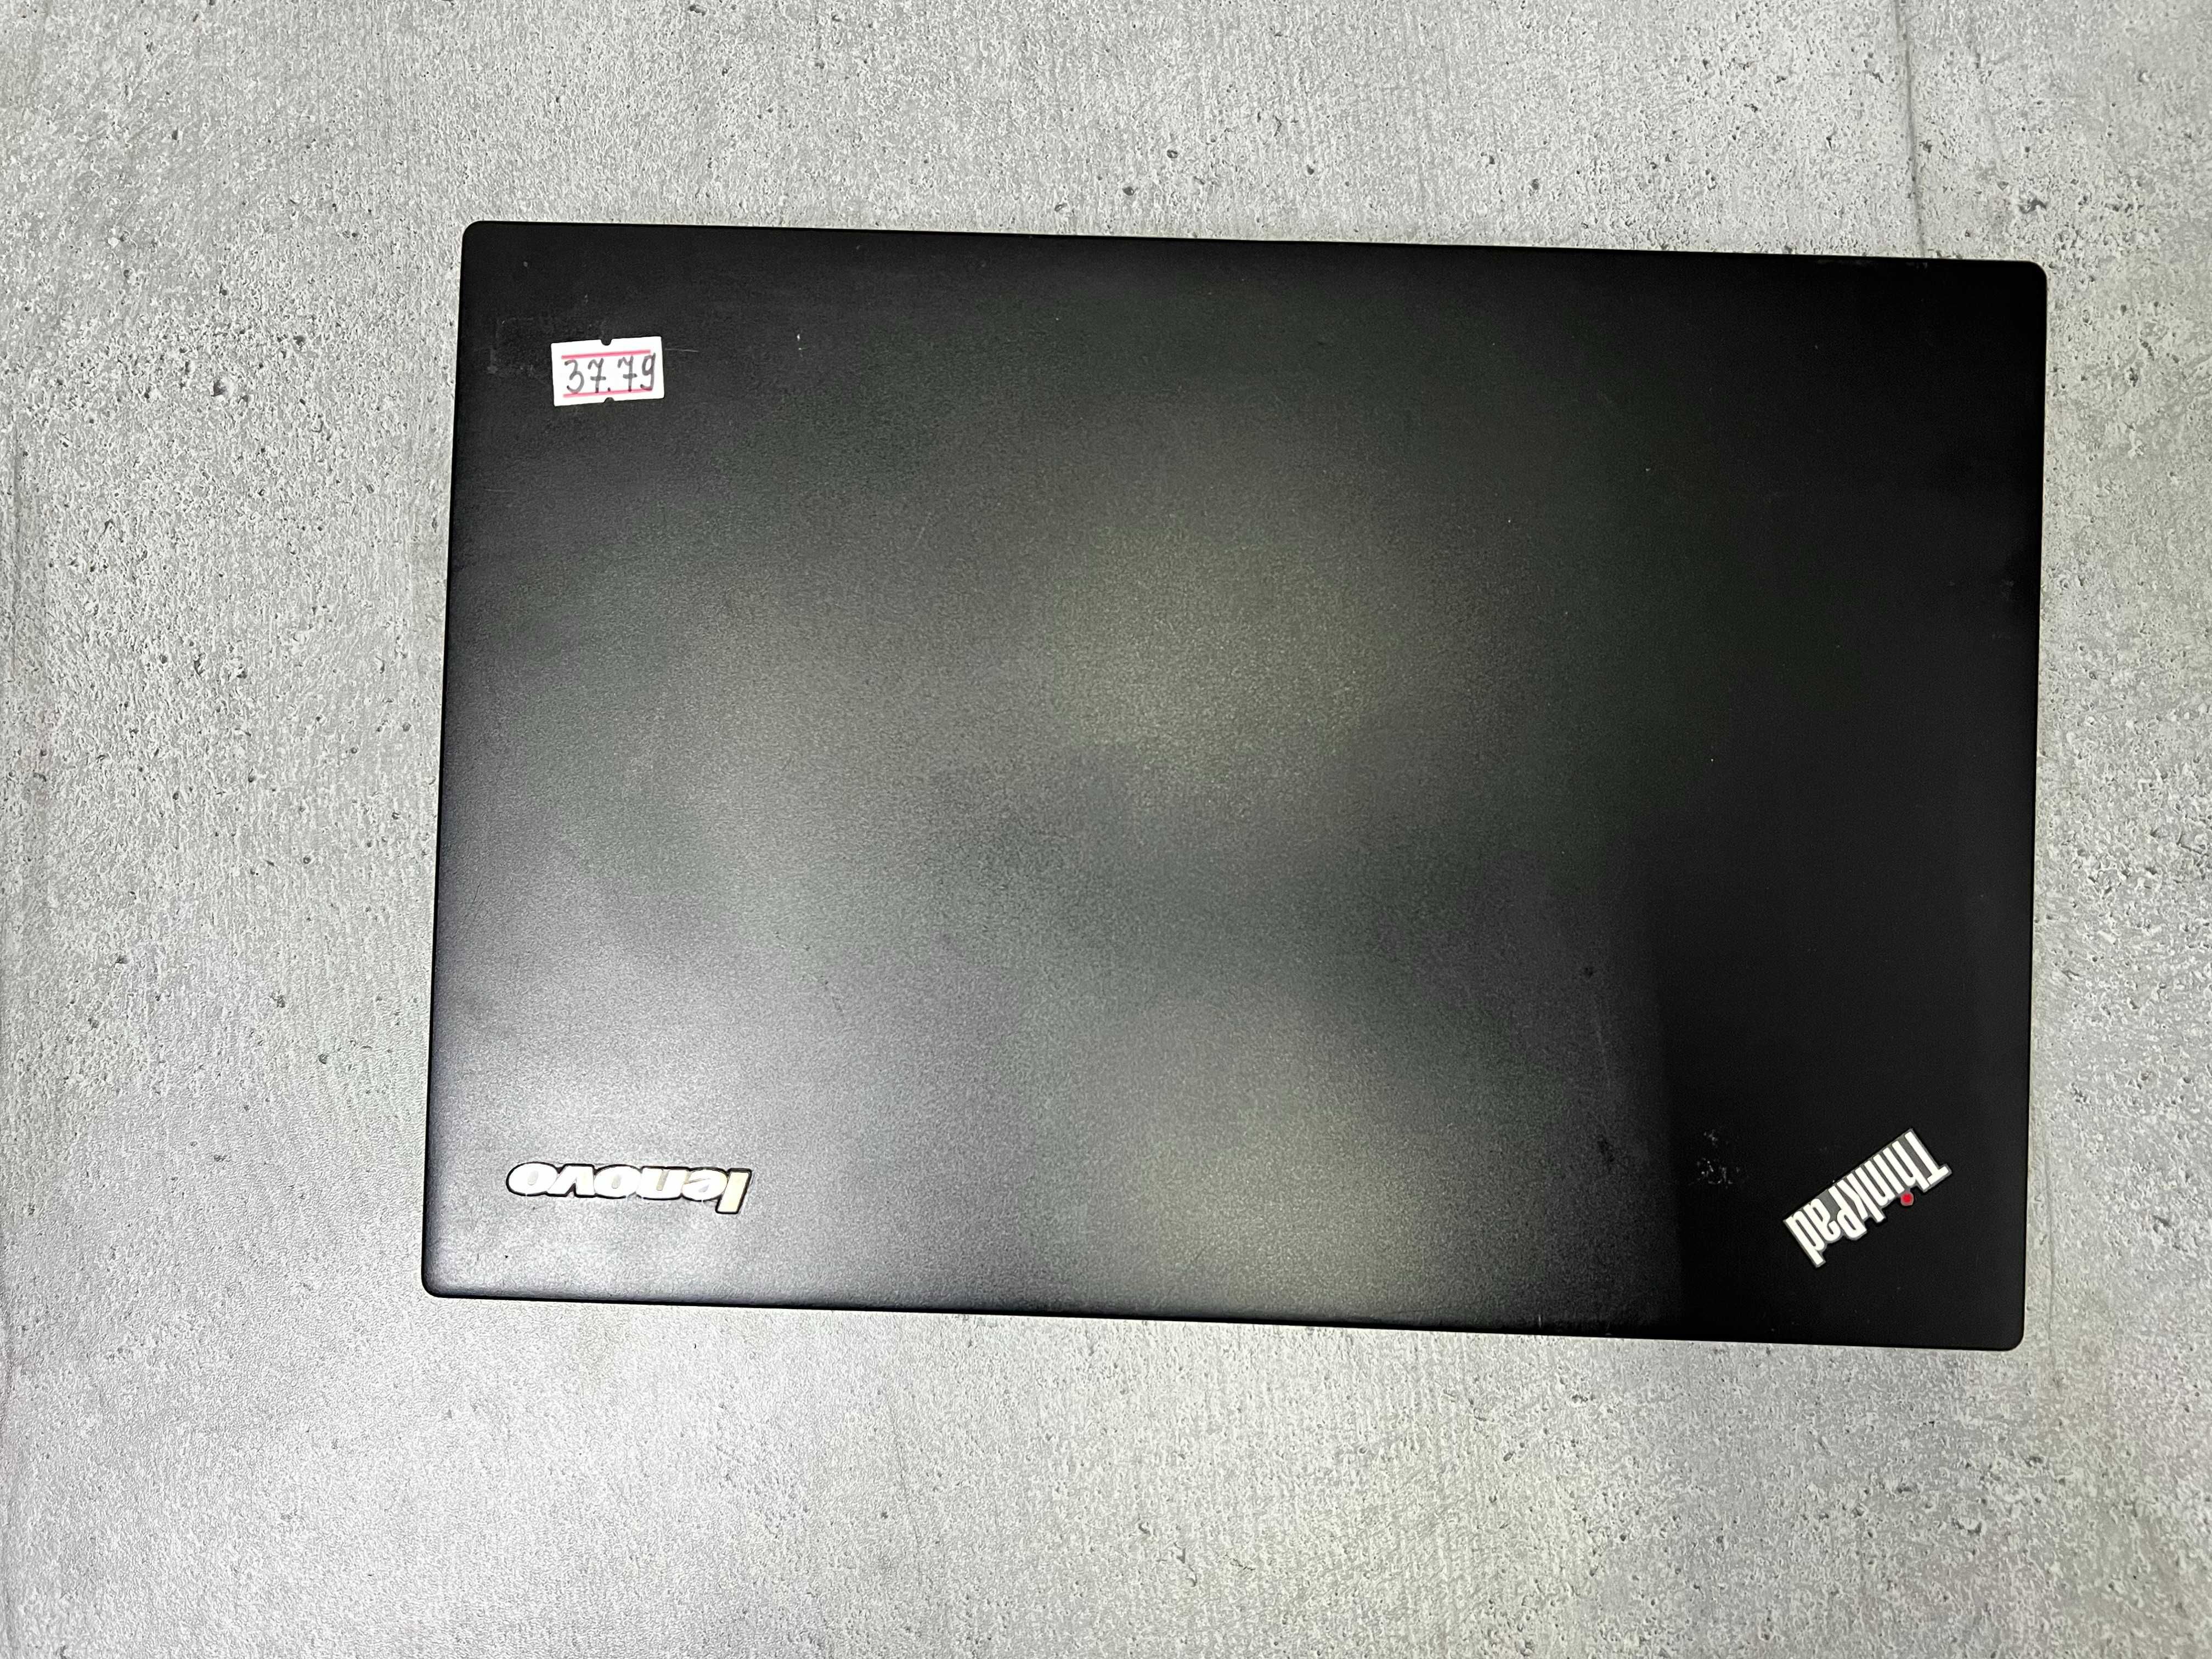 i5-4200u/240gb/8gb/ssd/12.5" Компактний ноутбук Lenovo Леново x240